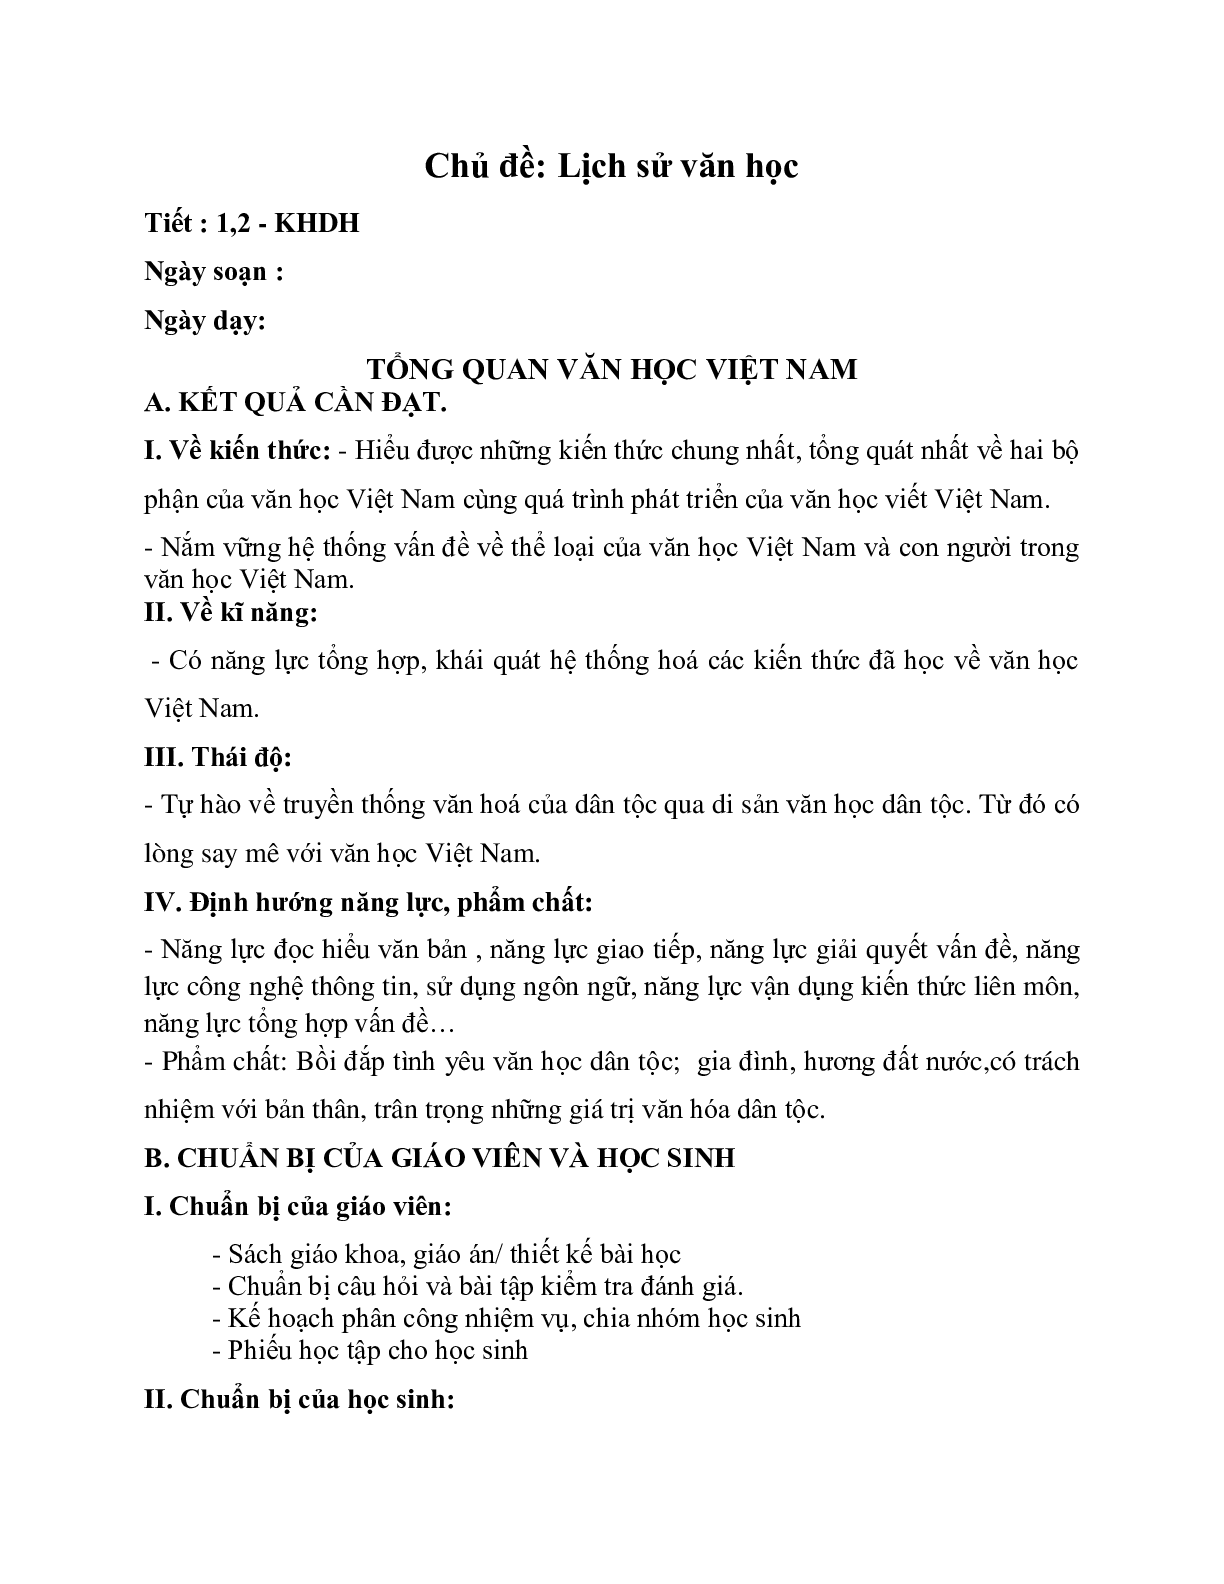 Giáo án ngữ văn lớp 10 Tiết 1, 2: Tổng quan văn học Việt Nam (trang 1)